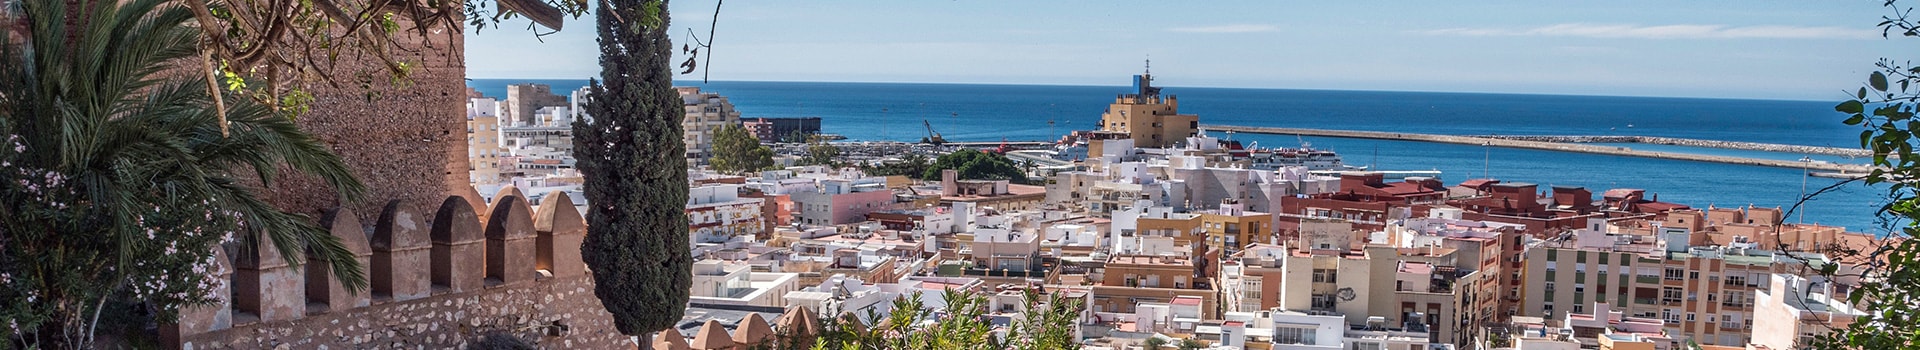 Porto - Almería